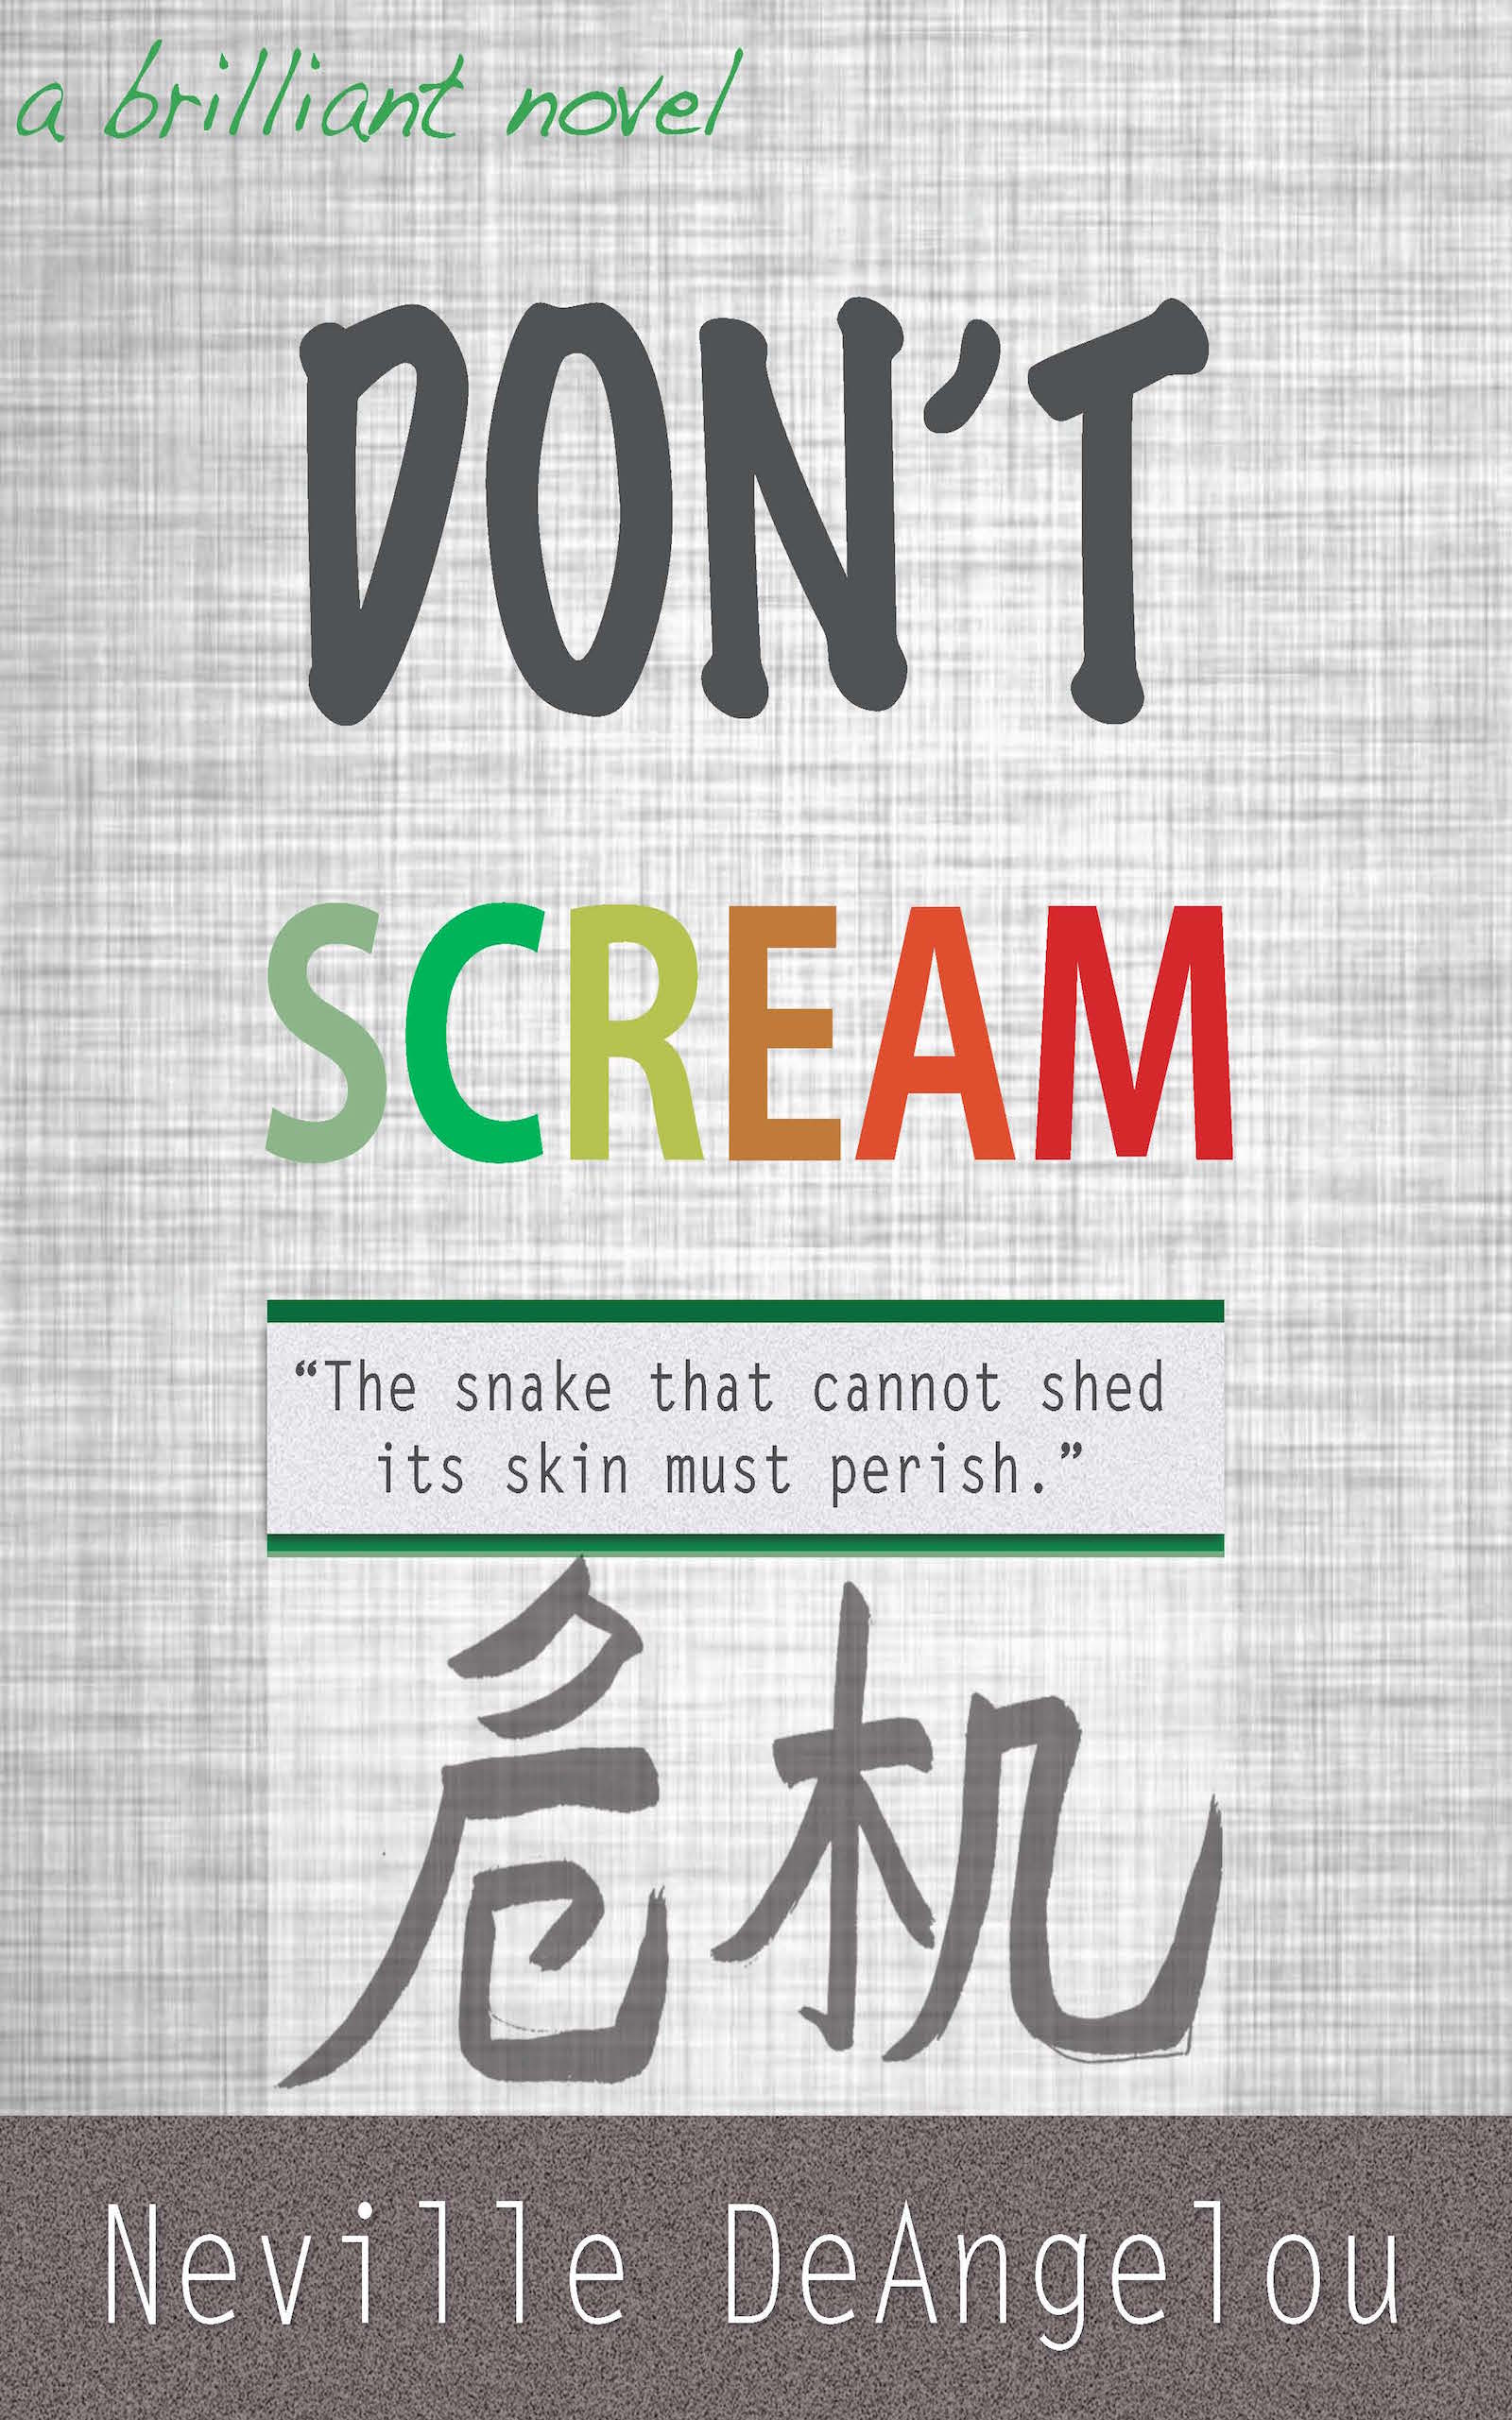 Don't Scream